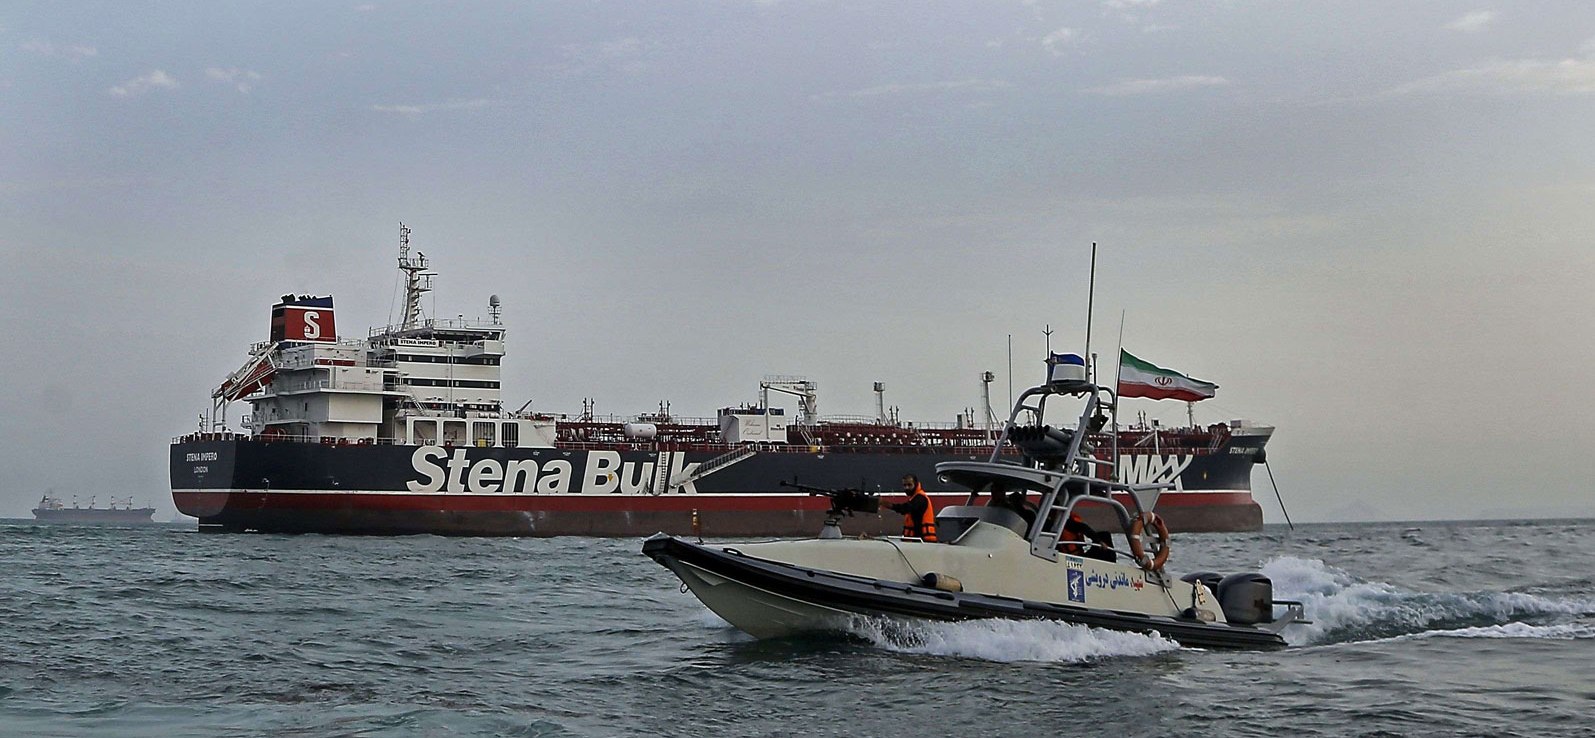 إيران تؤجج التوتر في الخليج وترفض في الوقت ذاته عسكرة الممرات المائية الحيوية للملاحة البحرية